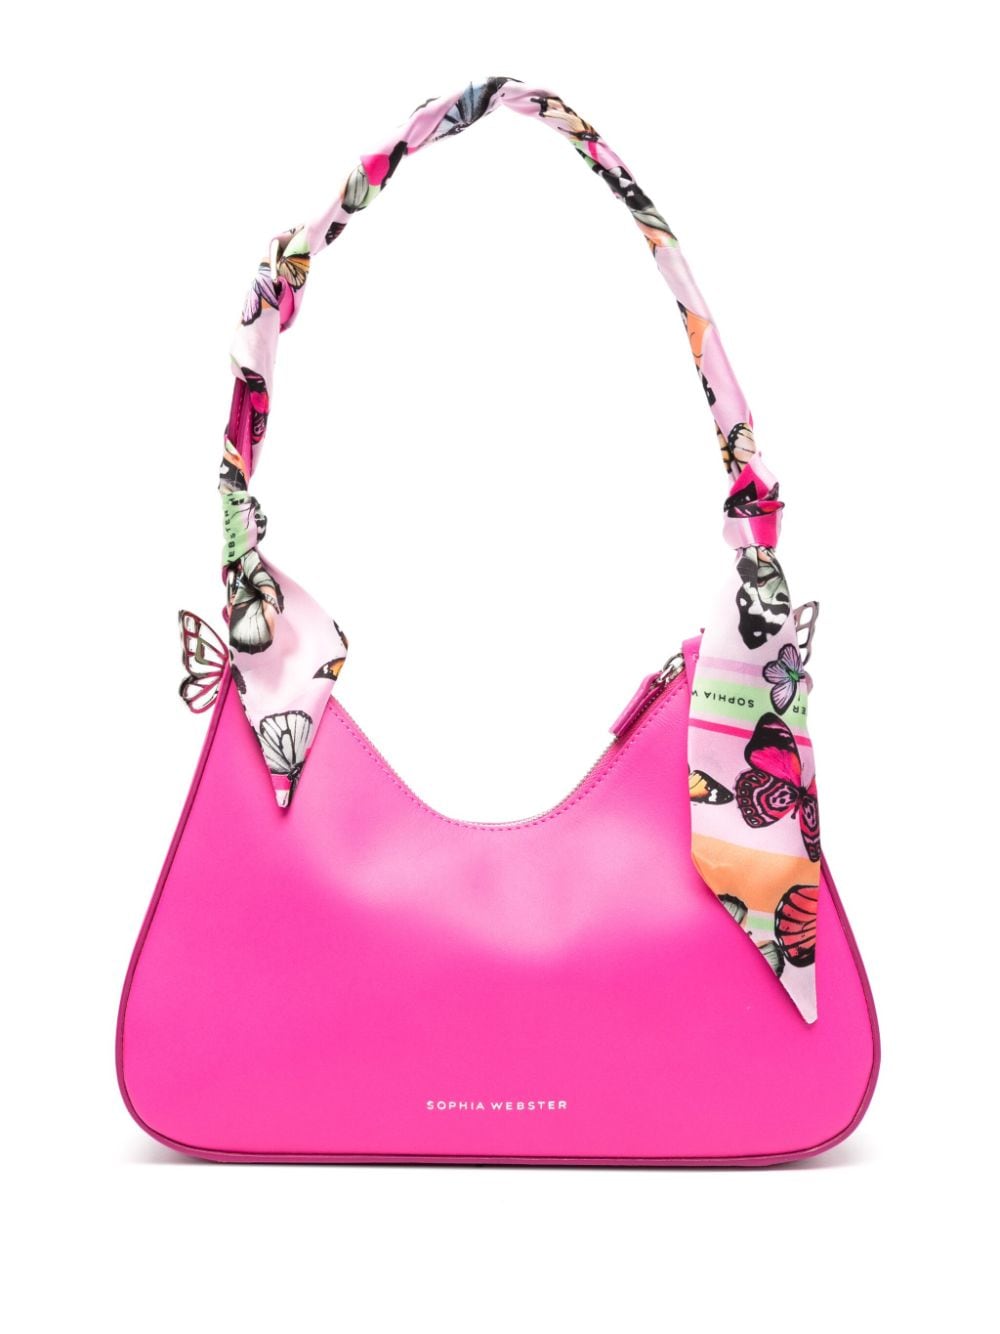 Sophia Webster Mariposa Hobo Bag In Pink